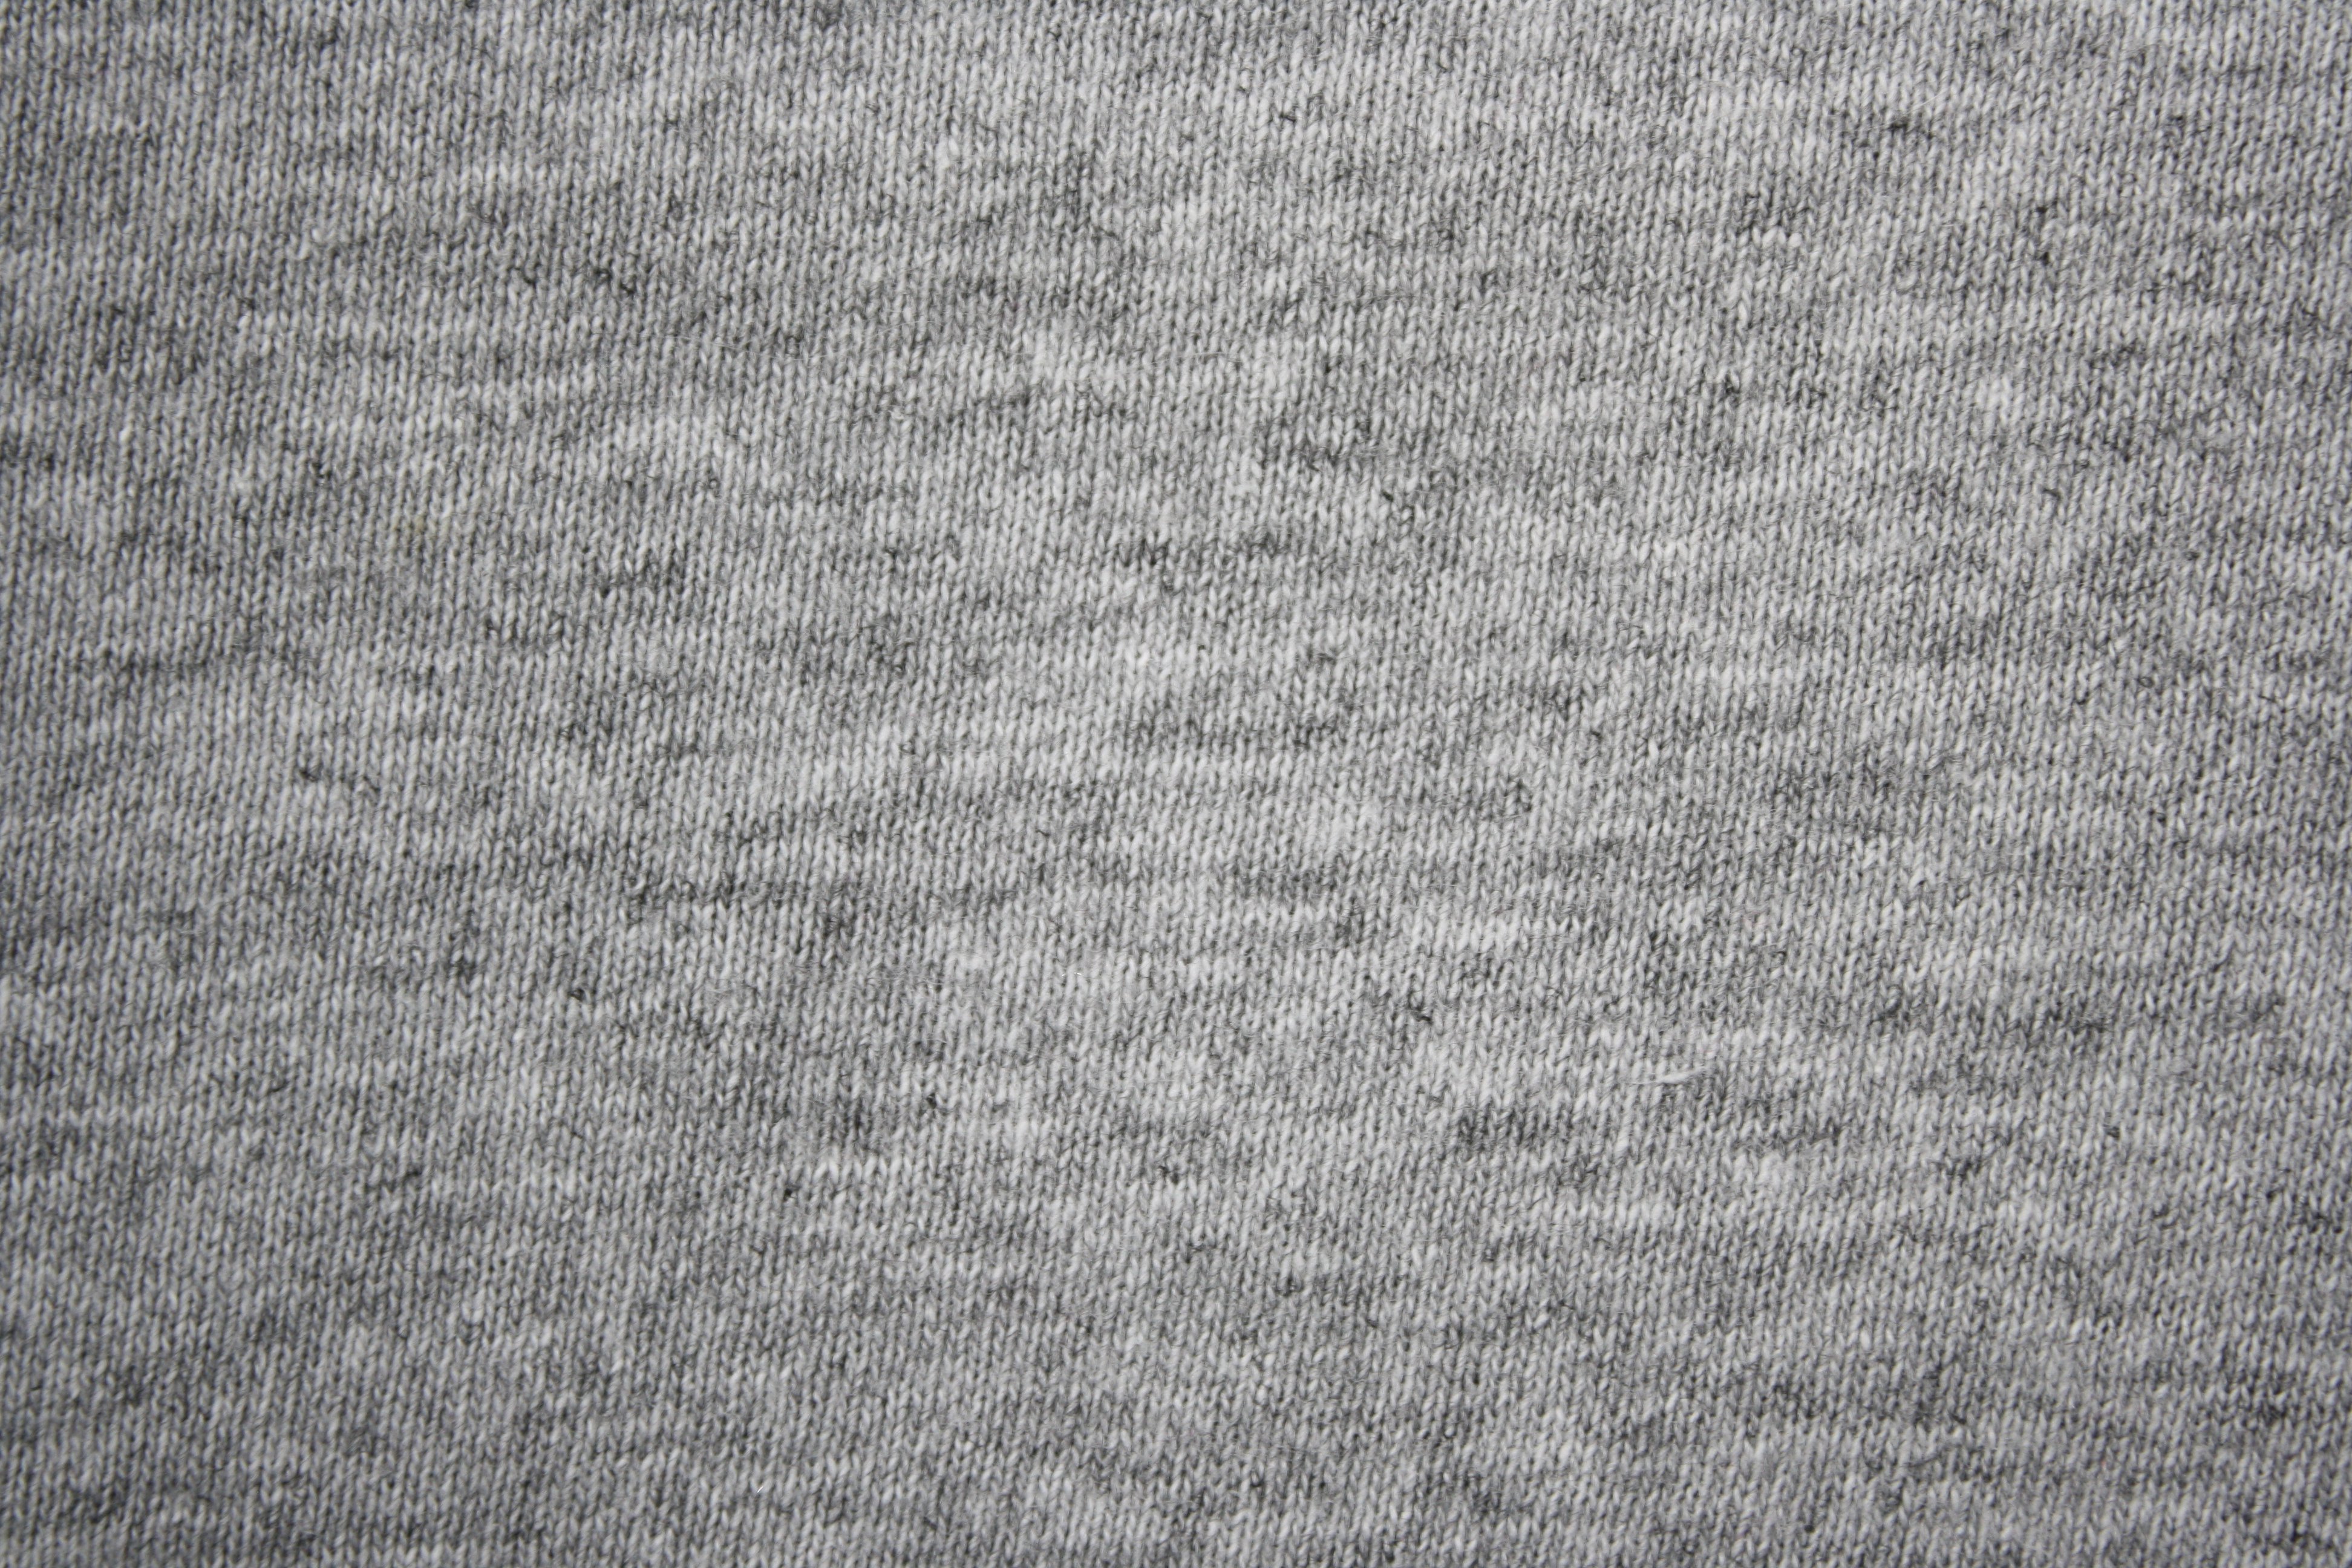 gray t-shirt texture